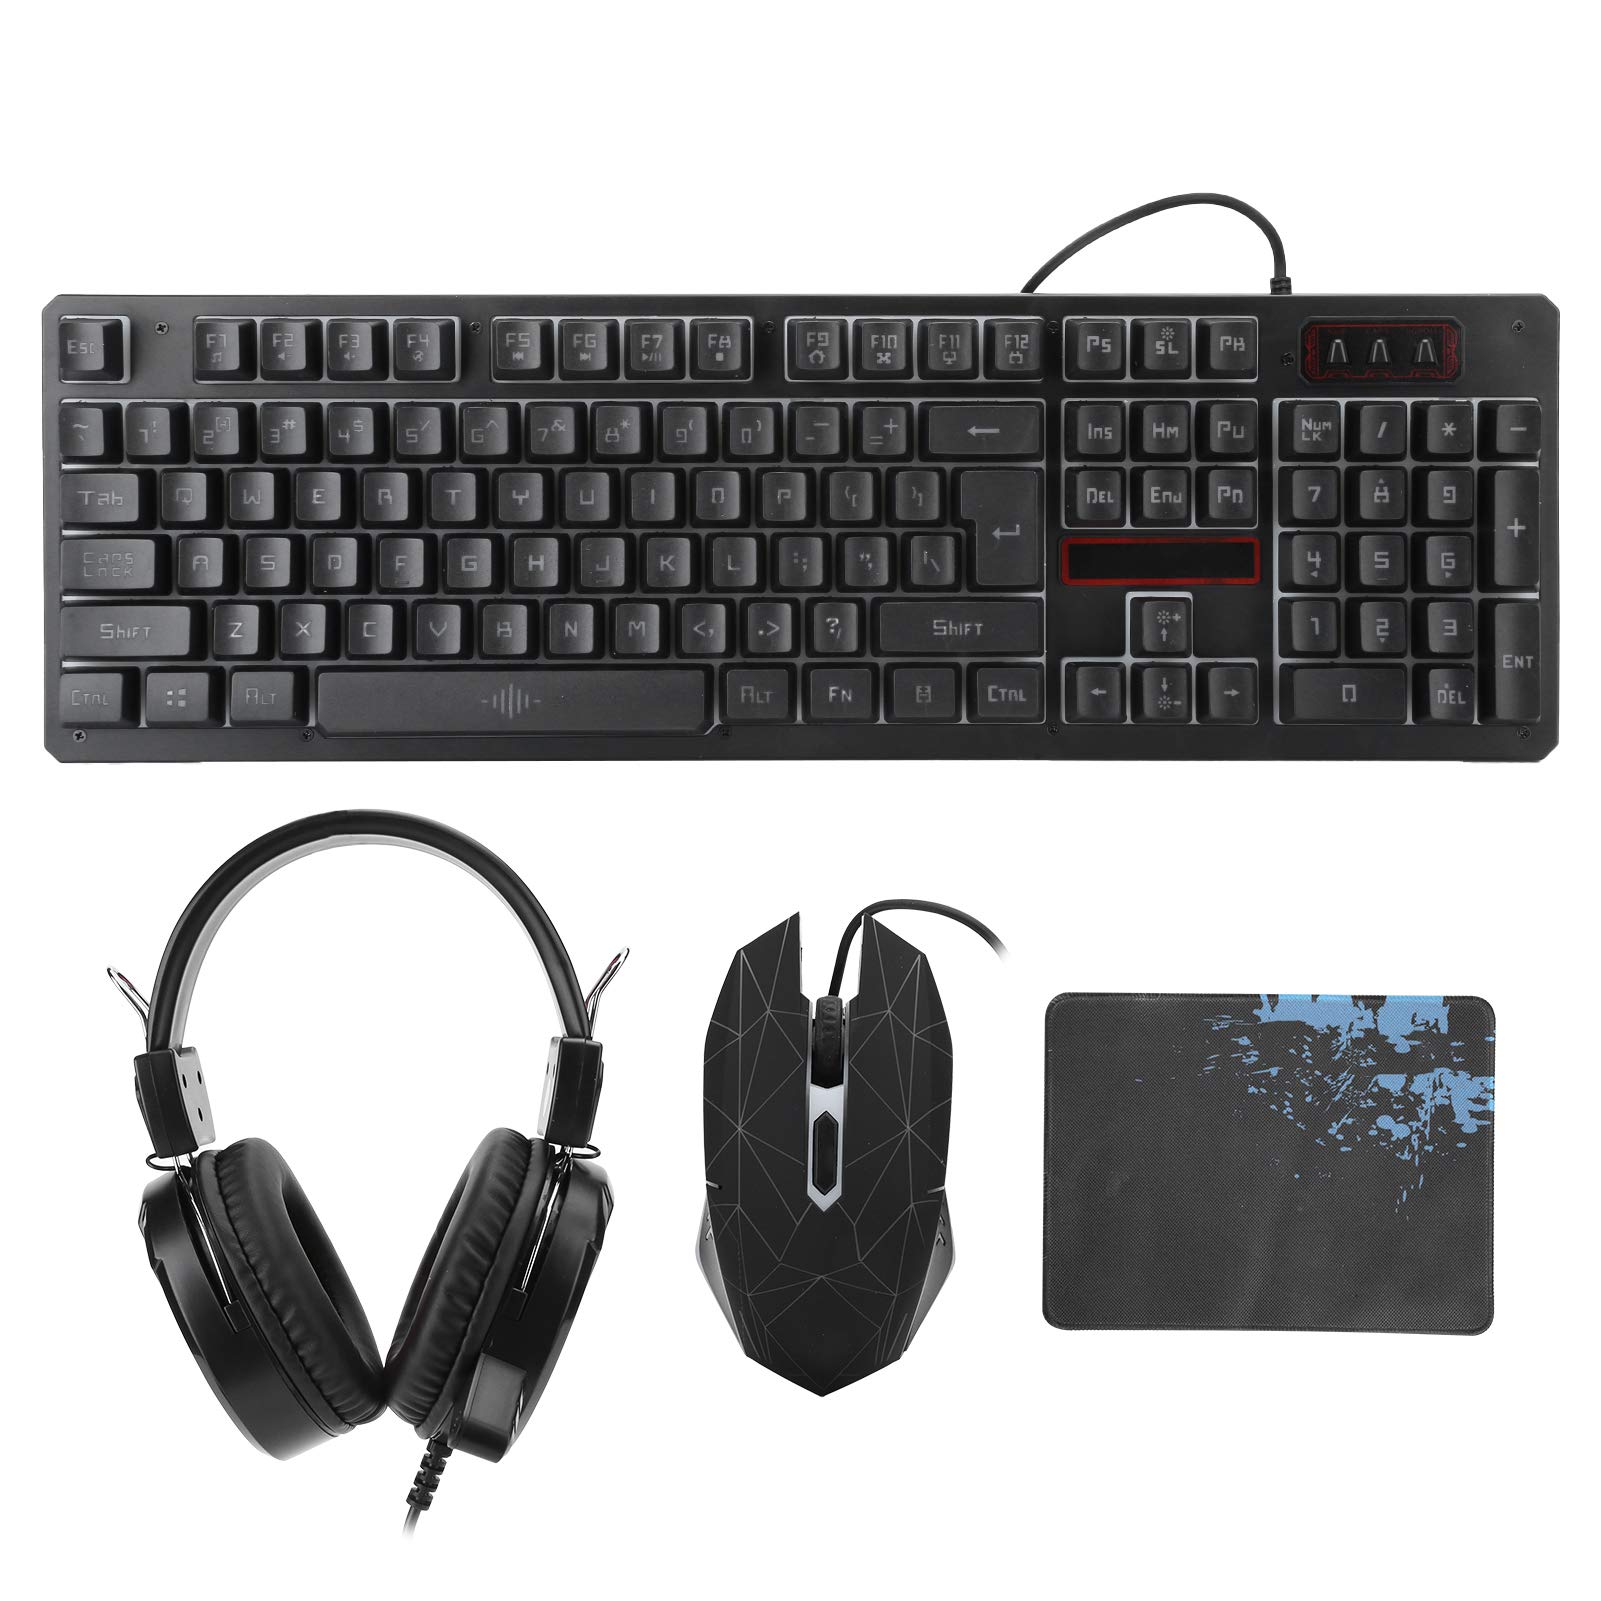 Sutinna Gaming-Tastaturen Maus-Headset, 3-teilige Kabelgebundene Tastatur Maus-Headset-Set Gaming-Hintergrundbeleuchtungstastatur für Laptop-Computer-PC-Spiele(Schwarz)